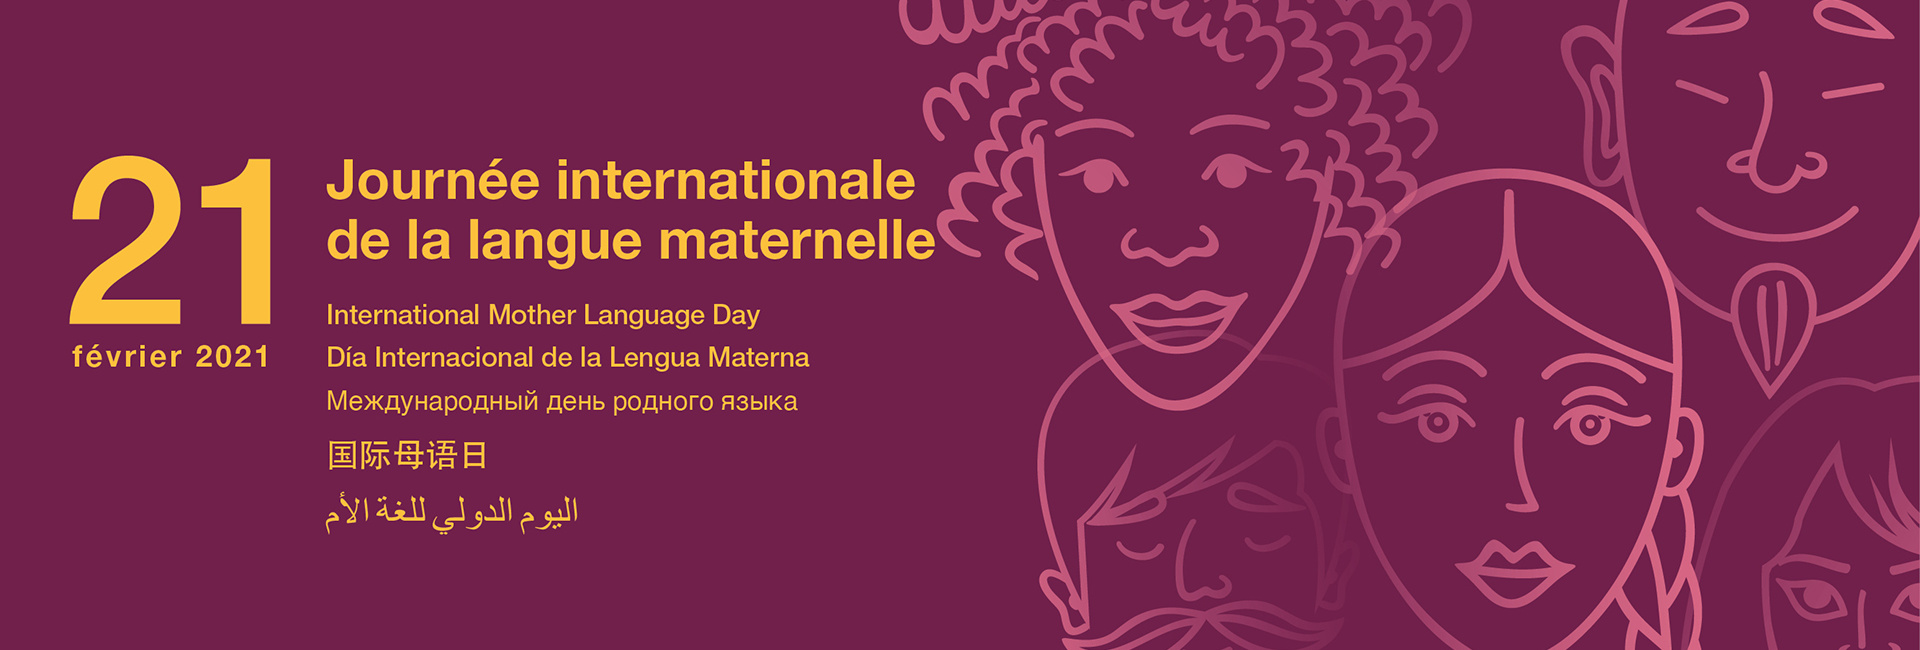 Journée internationale de la langue maternelle 2021